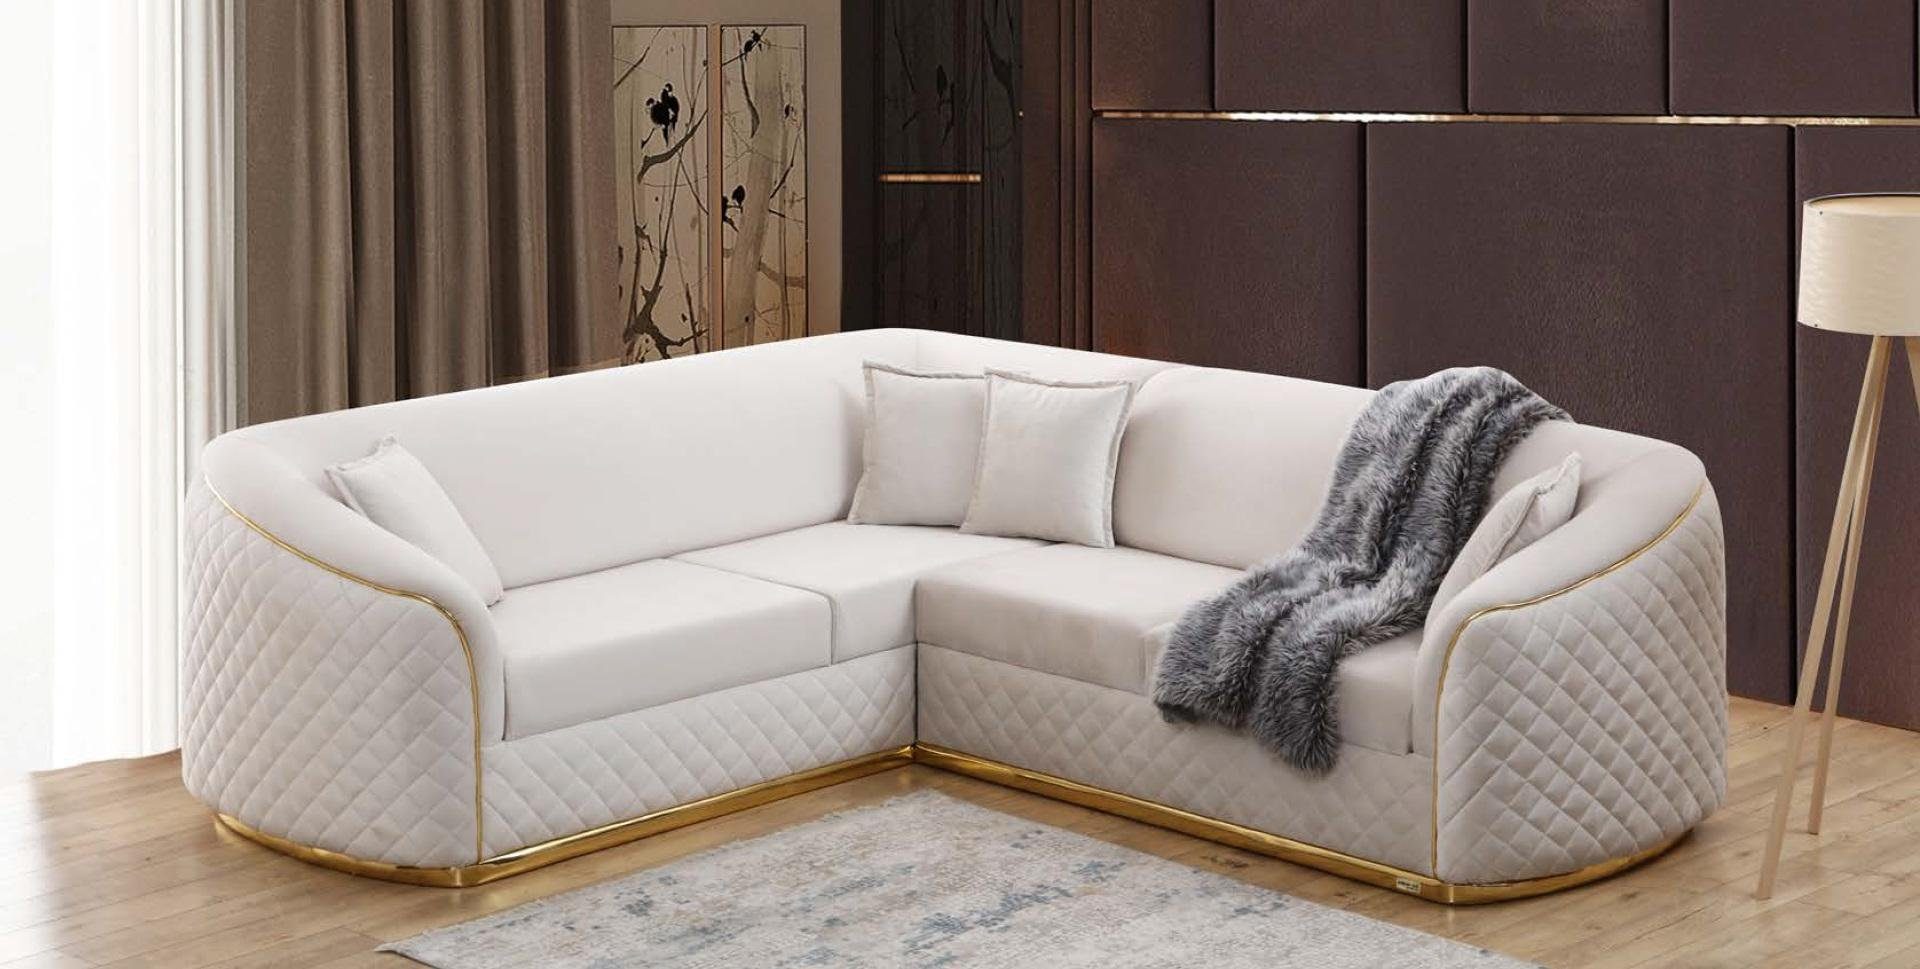 JVmoebel Ecksofa Weiße Eckcouch Wohnzimmer Eckgarnitur Sofa Couch Textil Ecksofa, Made in Europe